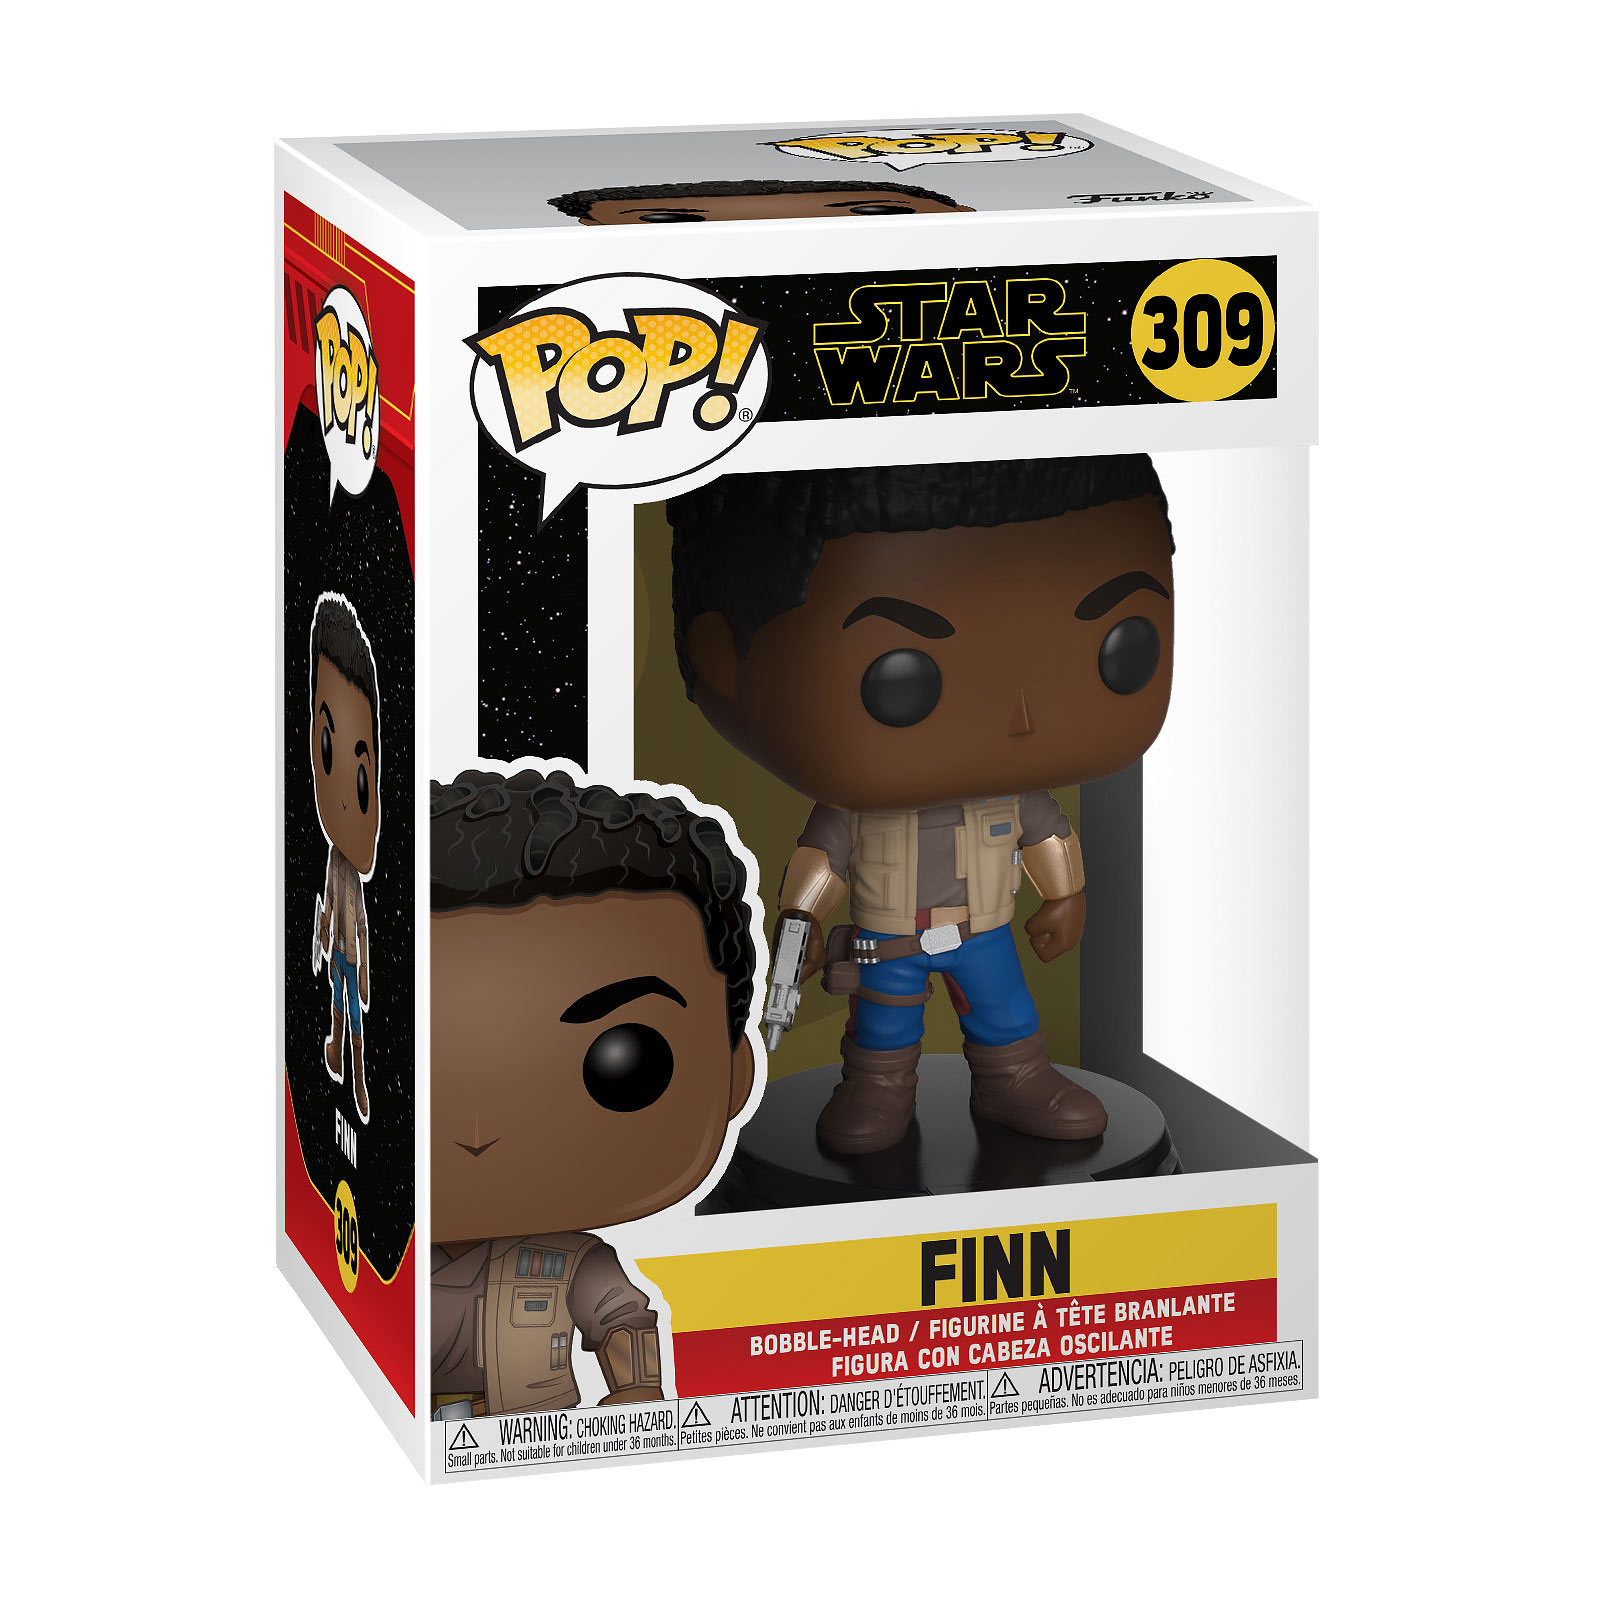 Star Wars - Finn Episode 9 Funko Pop bobblehead figure